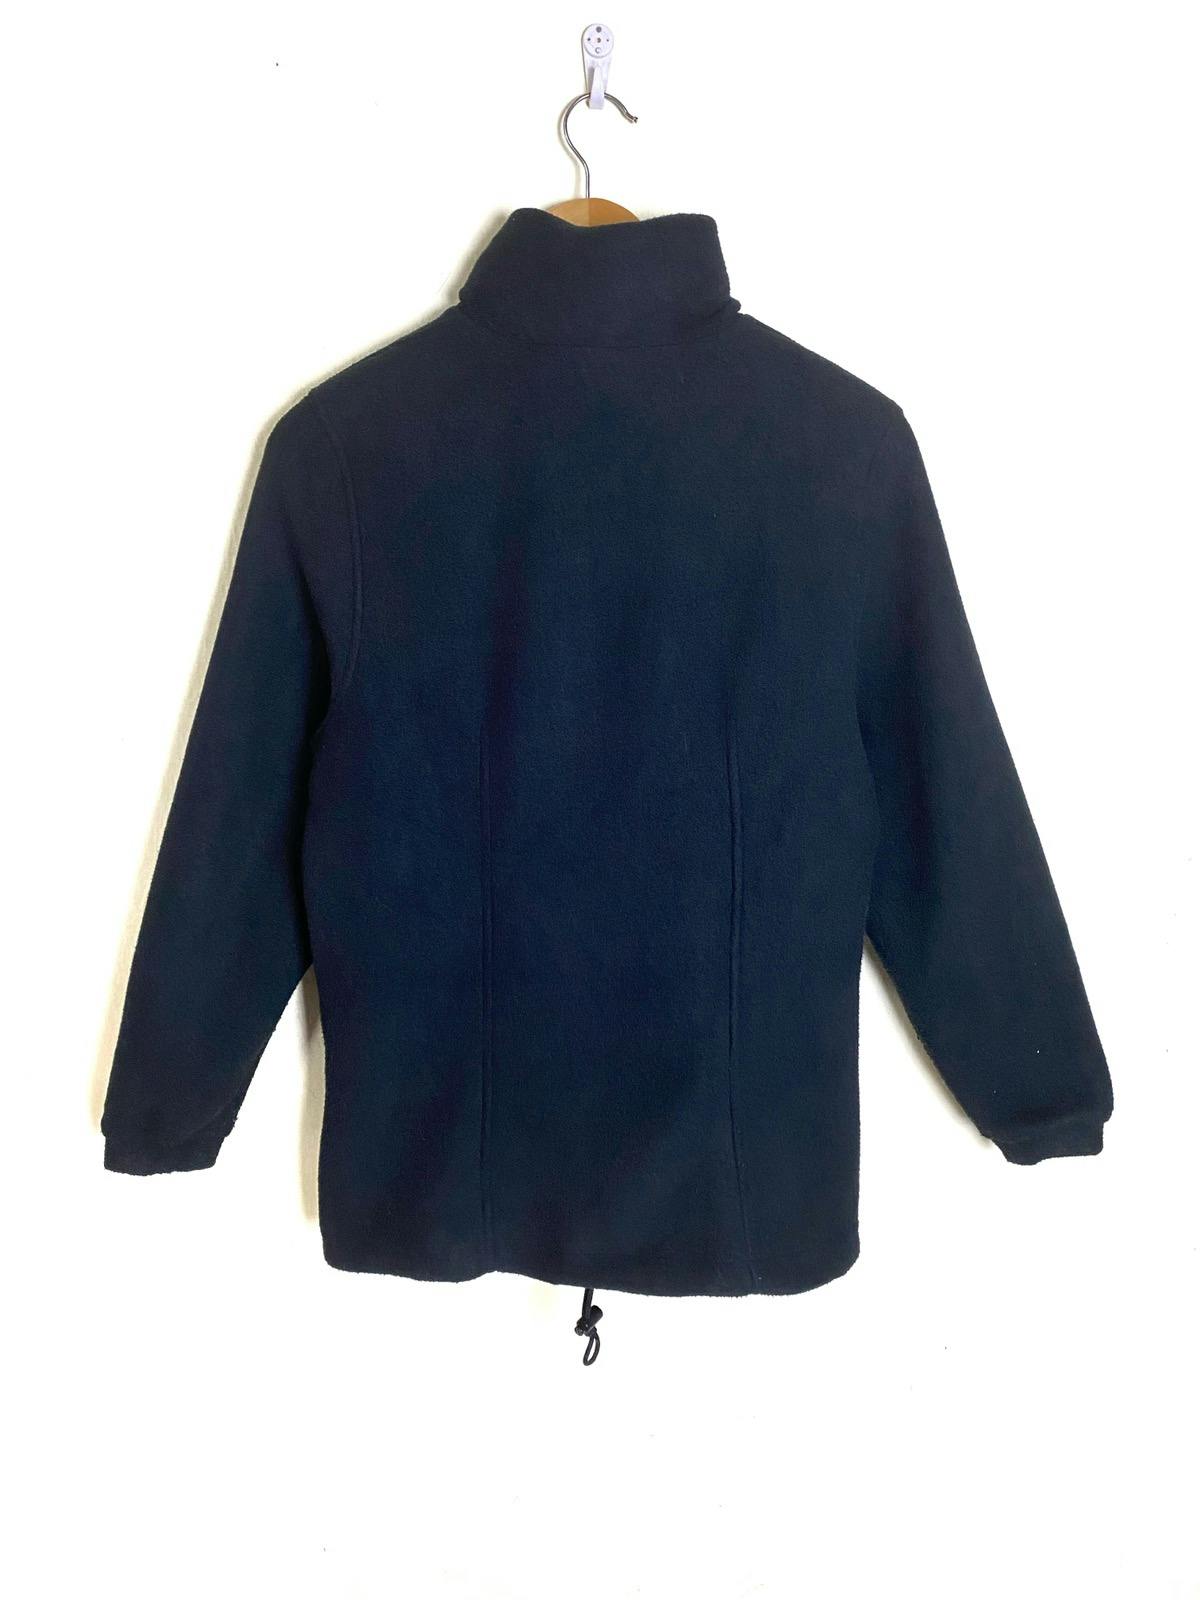 Vtg MONCLER Grenoble Reversible Anorak Jacket Made in Italy - 11